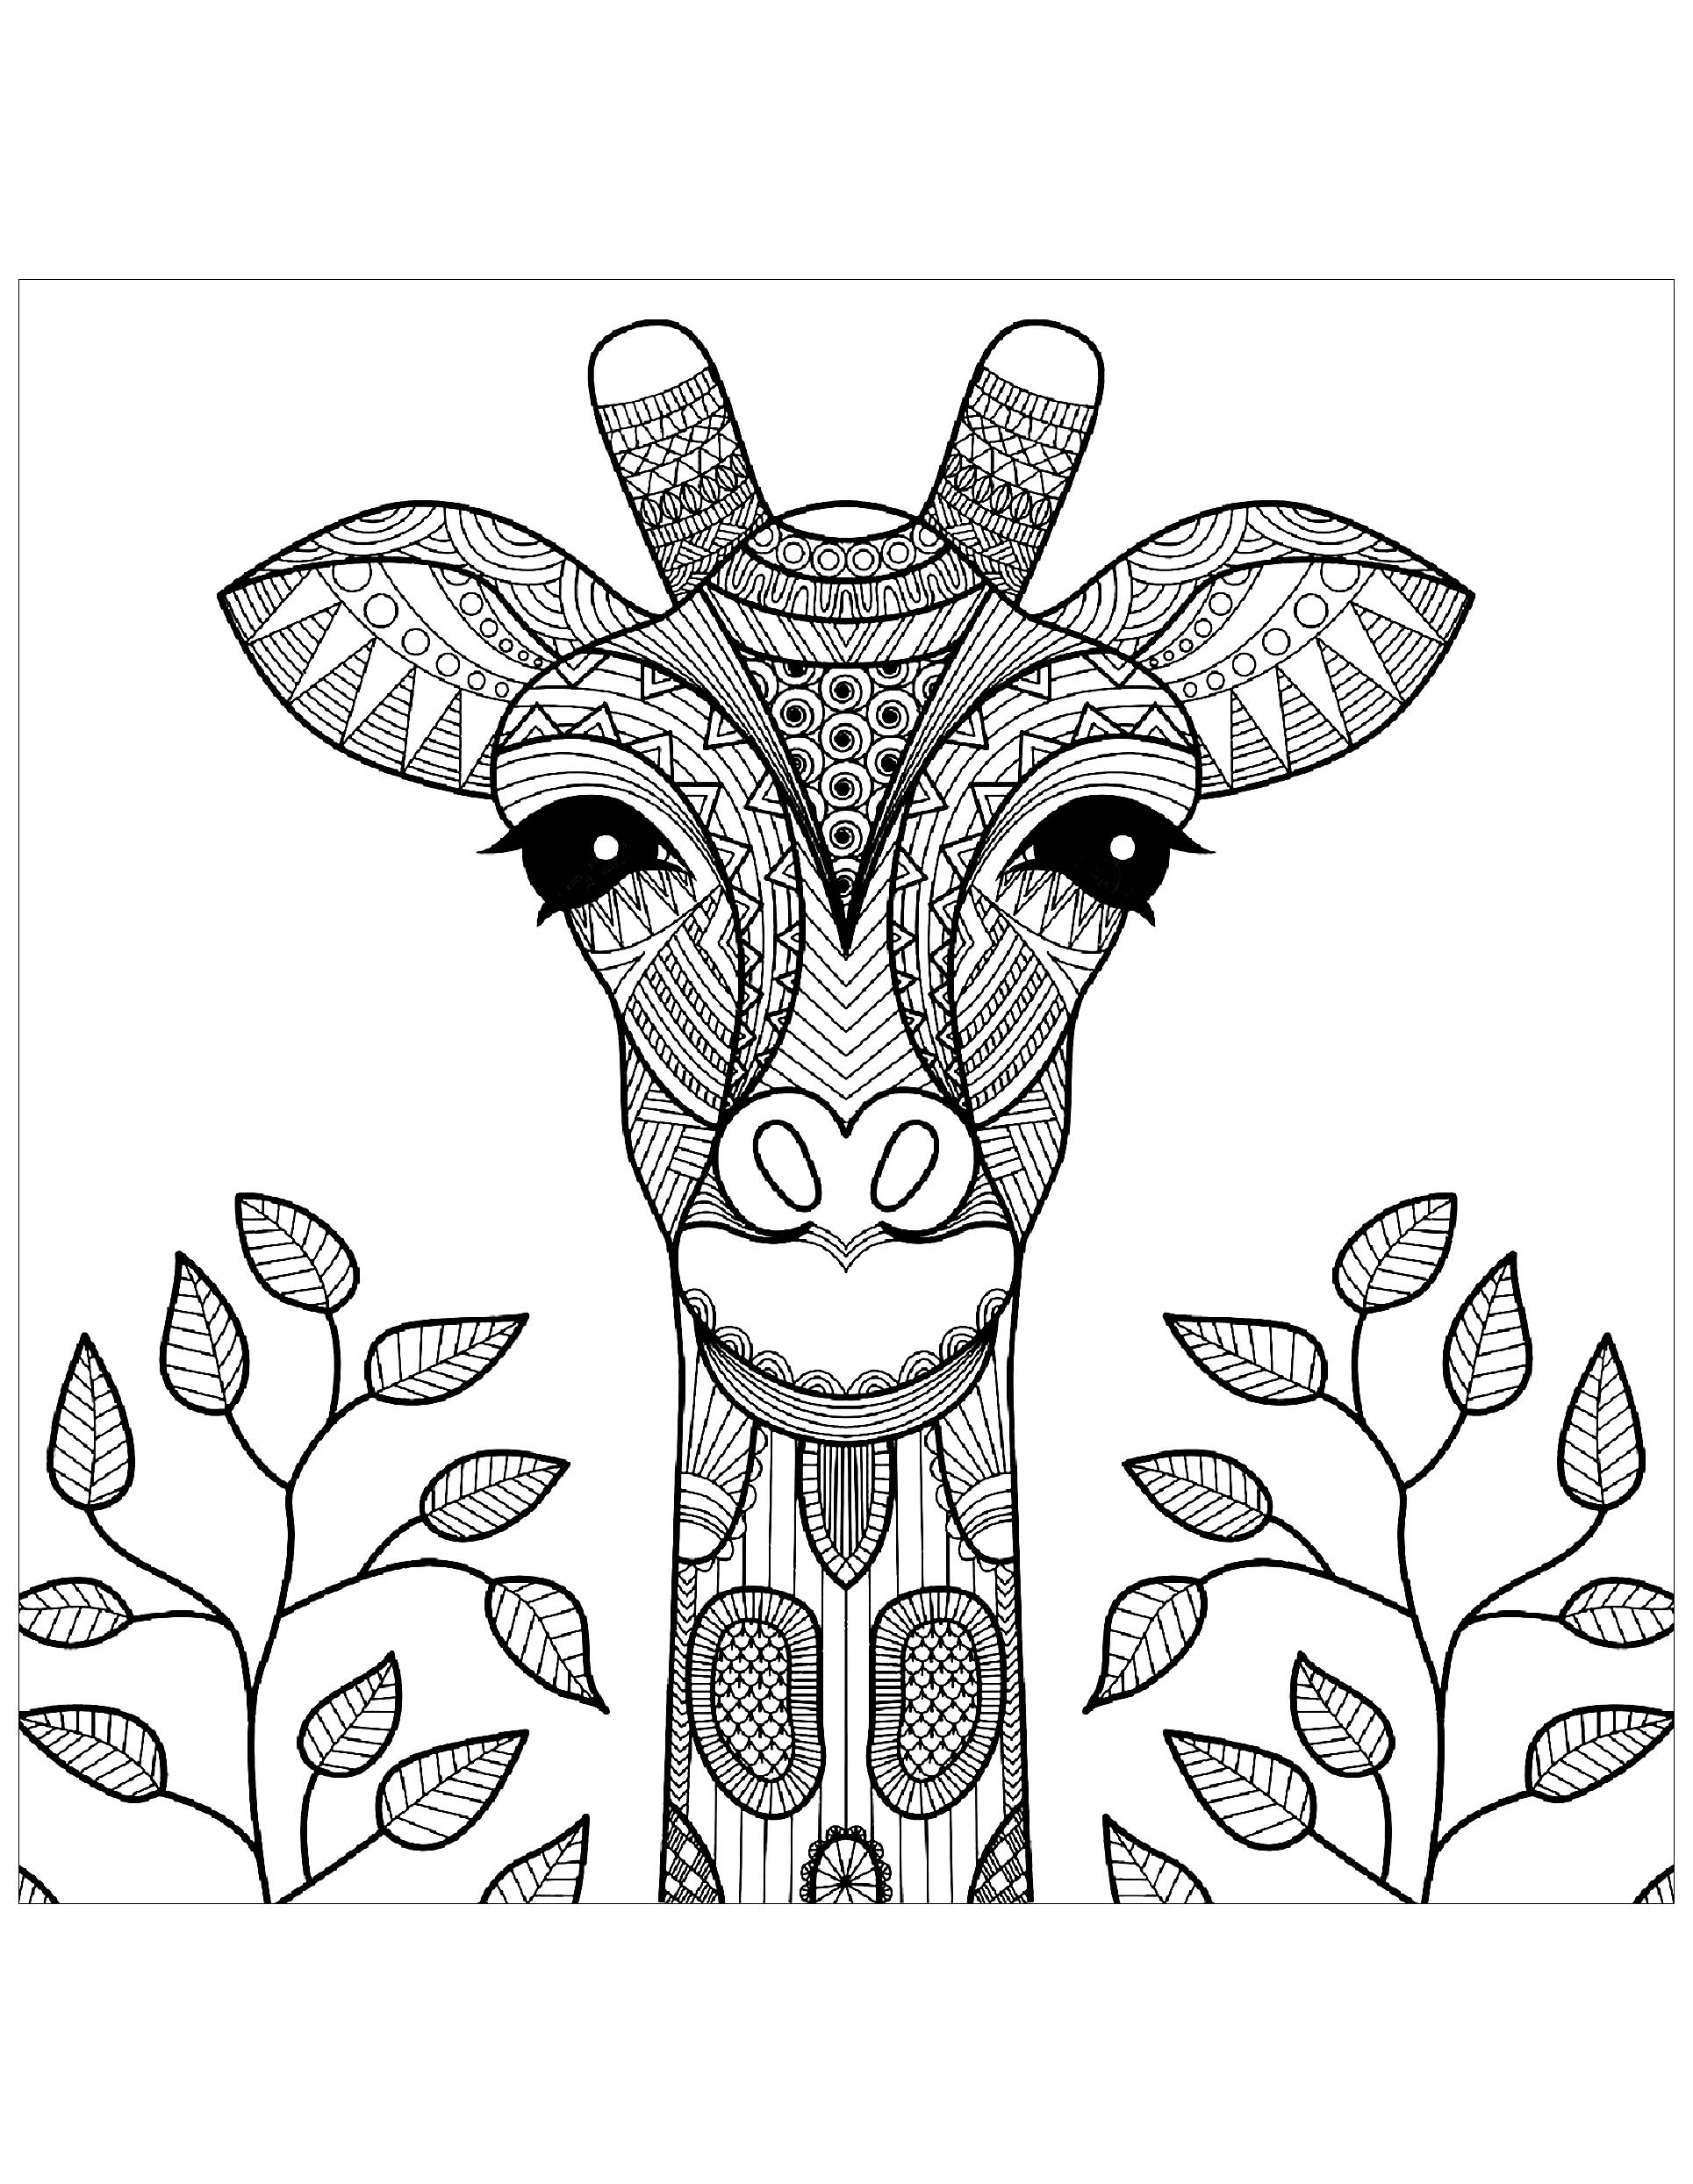 Desenhos simples para colorir para crianças de Girafas, Artista : Bimdeedee   Fonte : 123rf